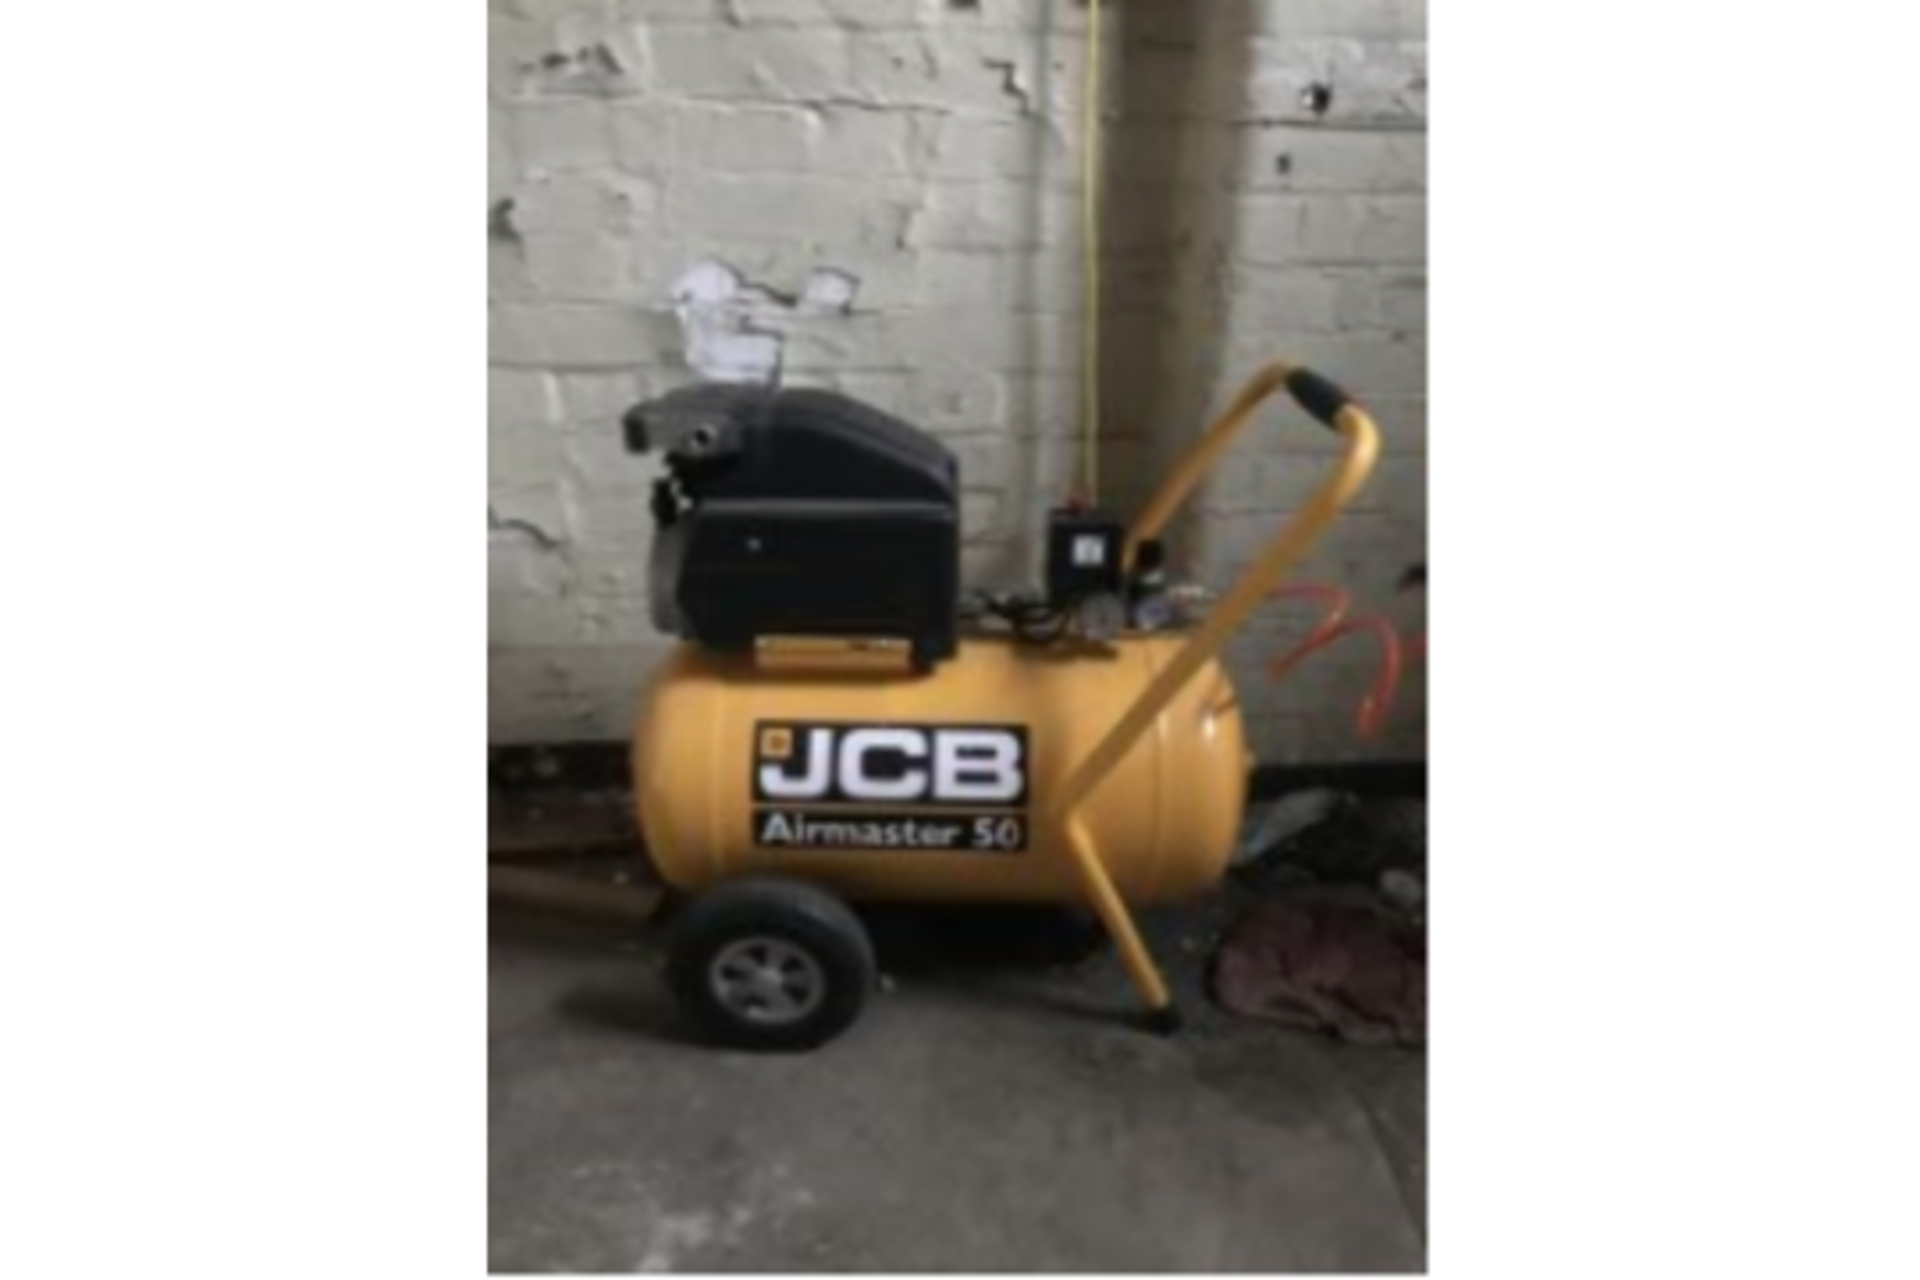 JCB 50ltr Air Compressor - Image 2 of 7